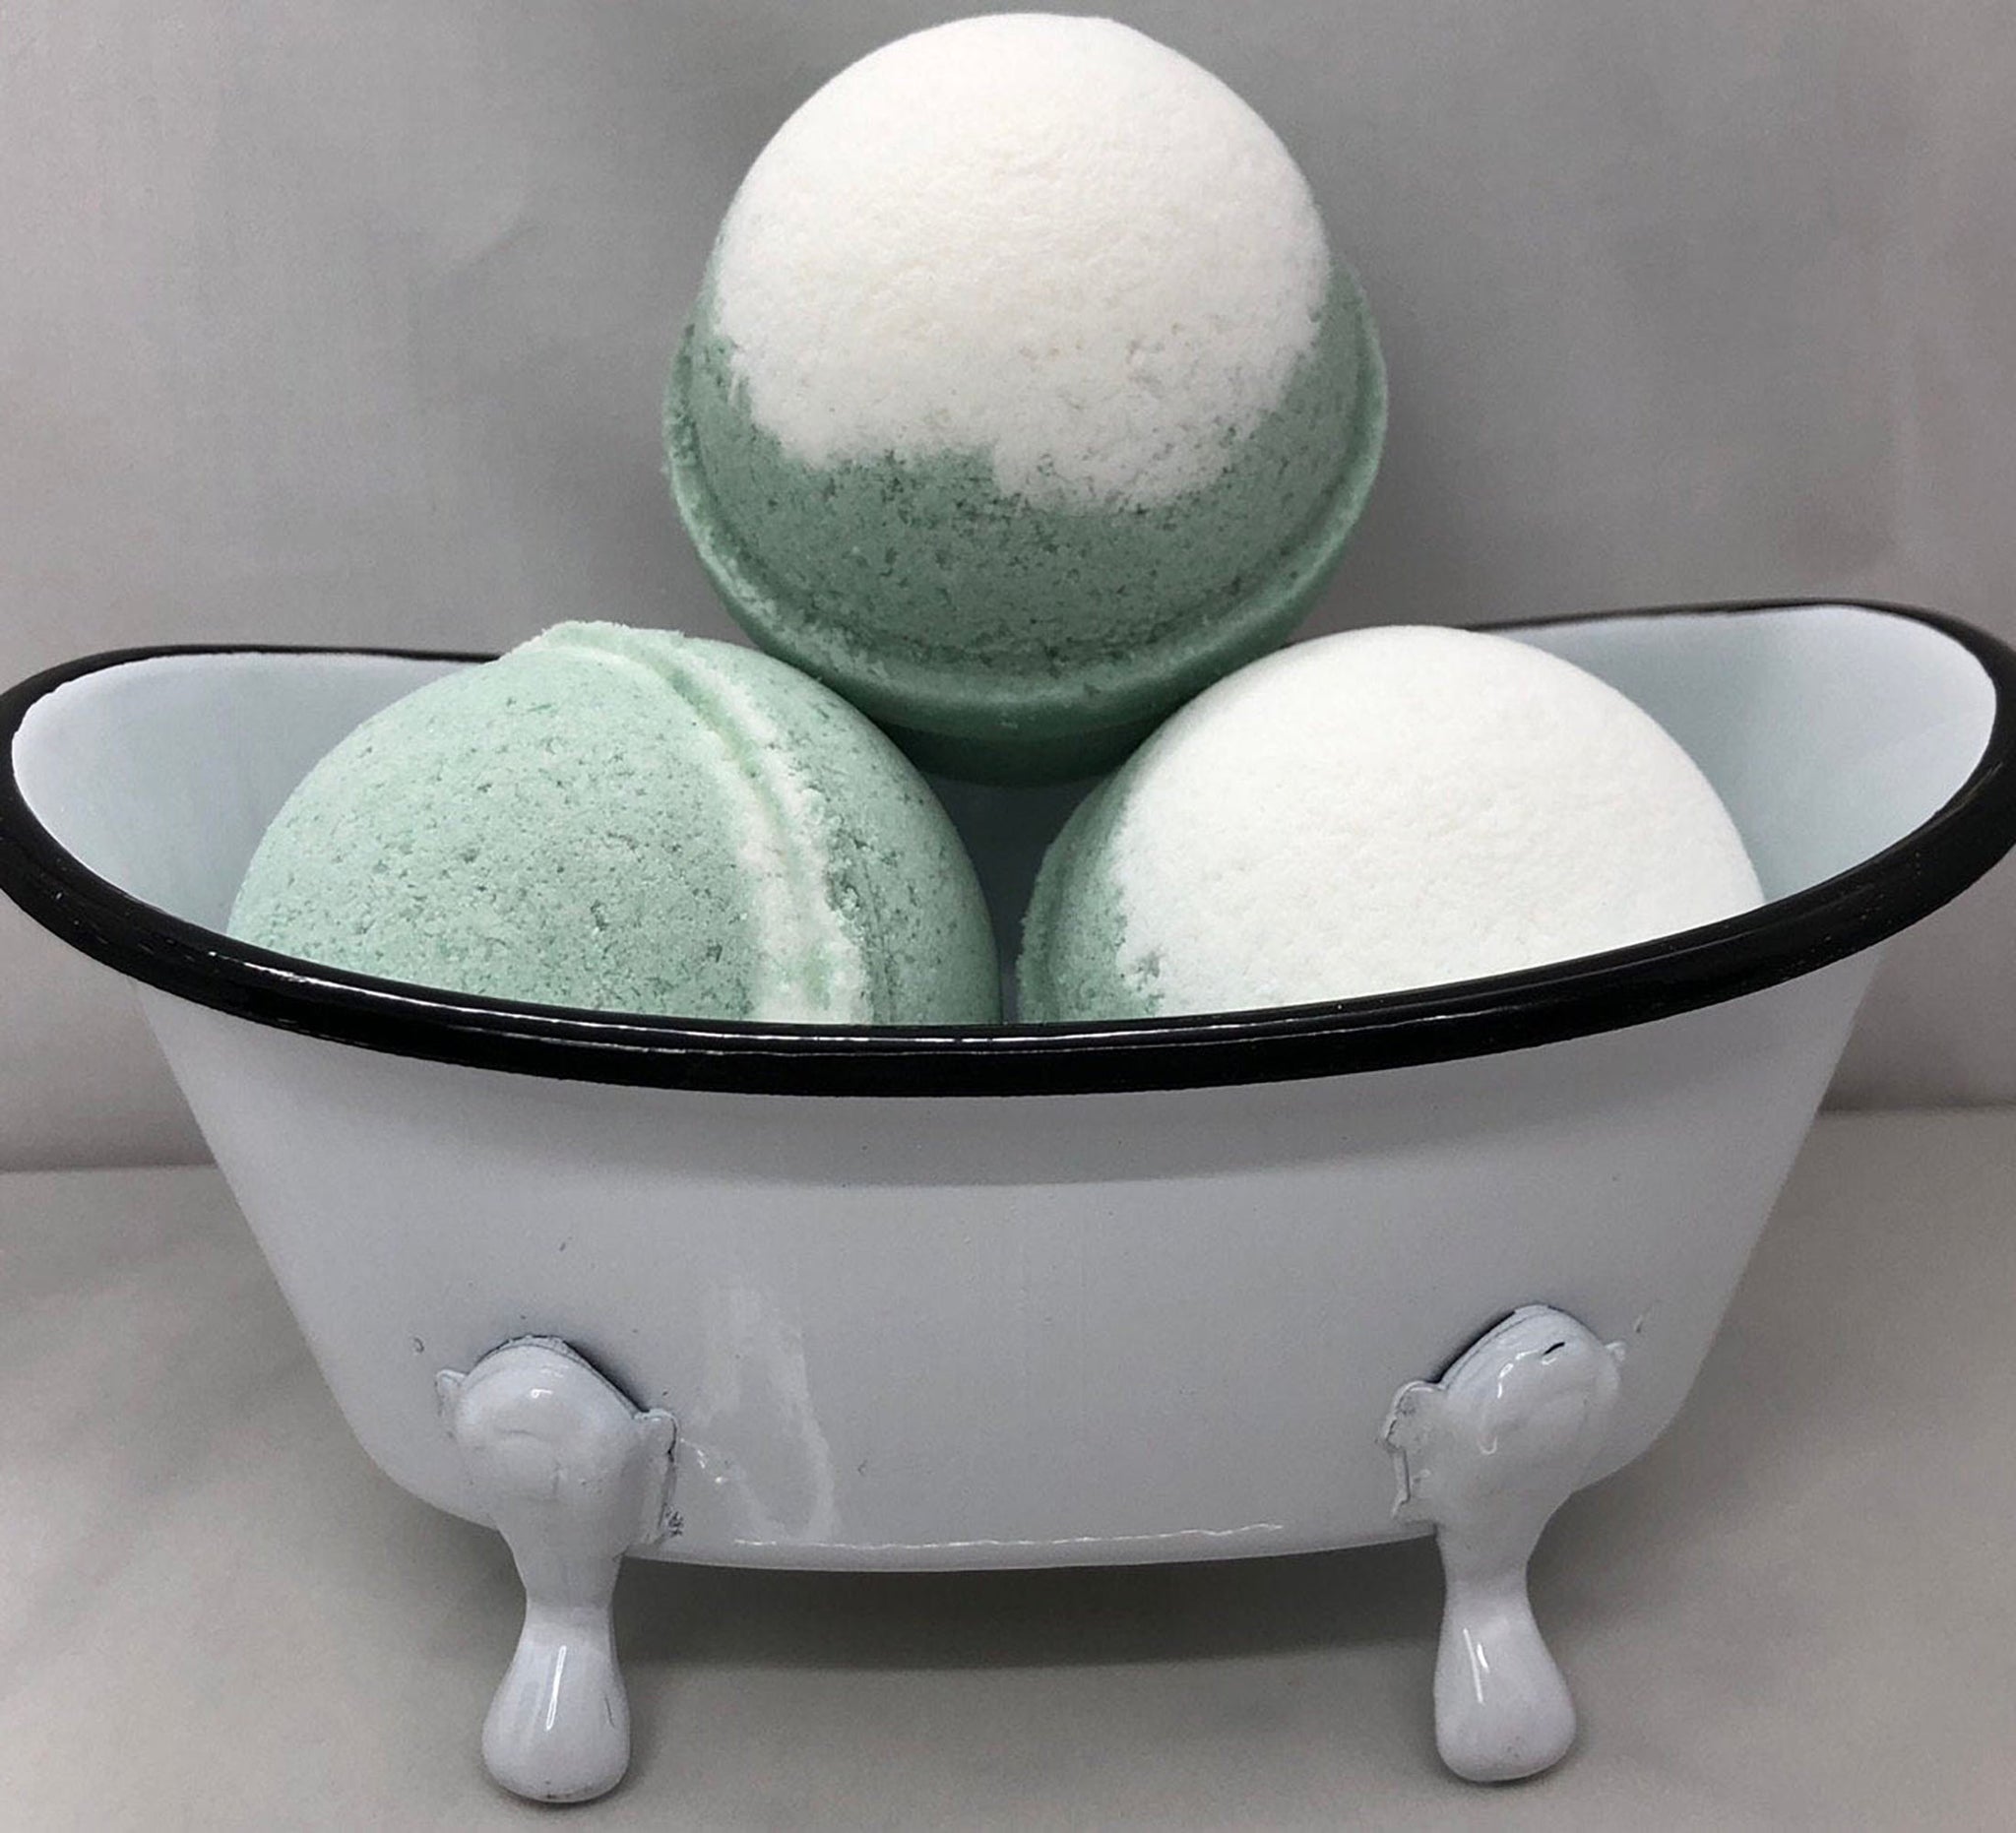 Round / Sphere Bath Bomb Mold